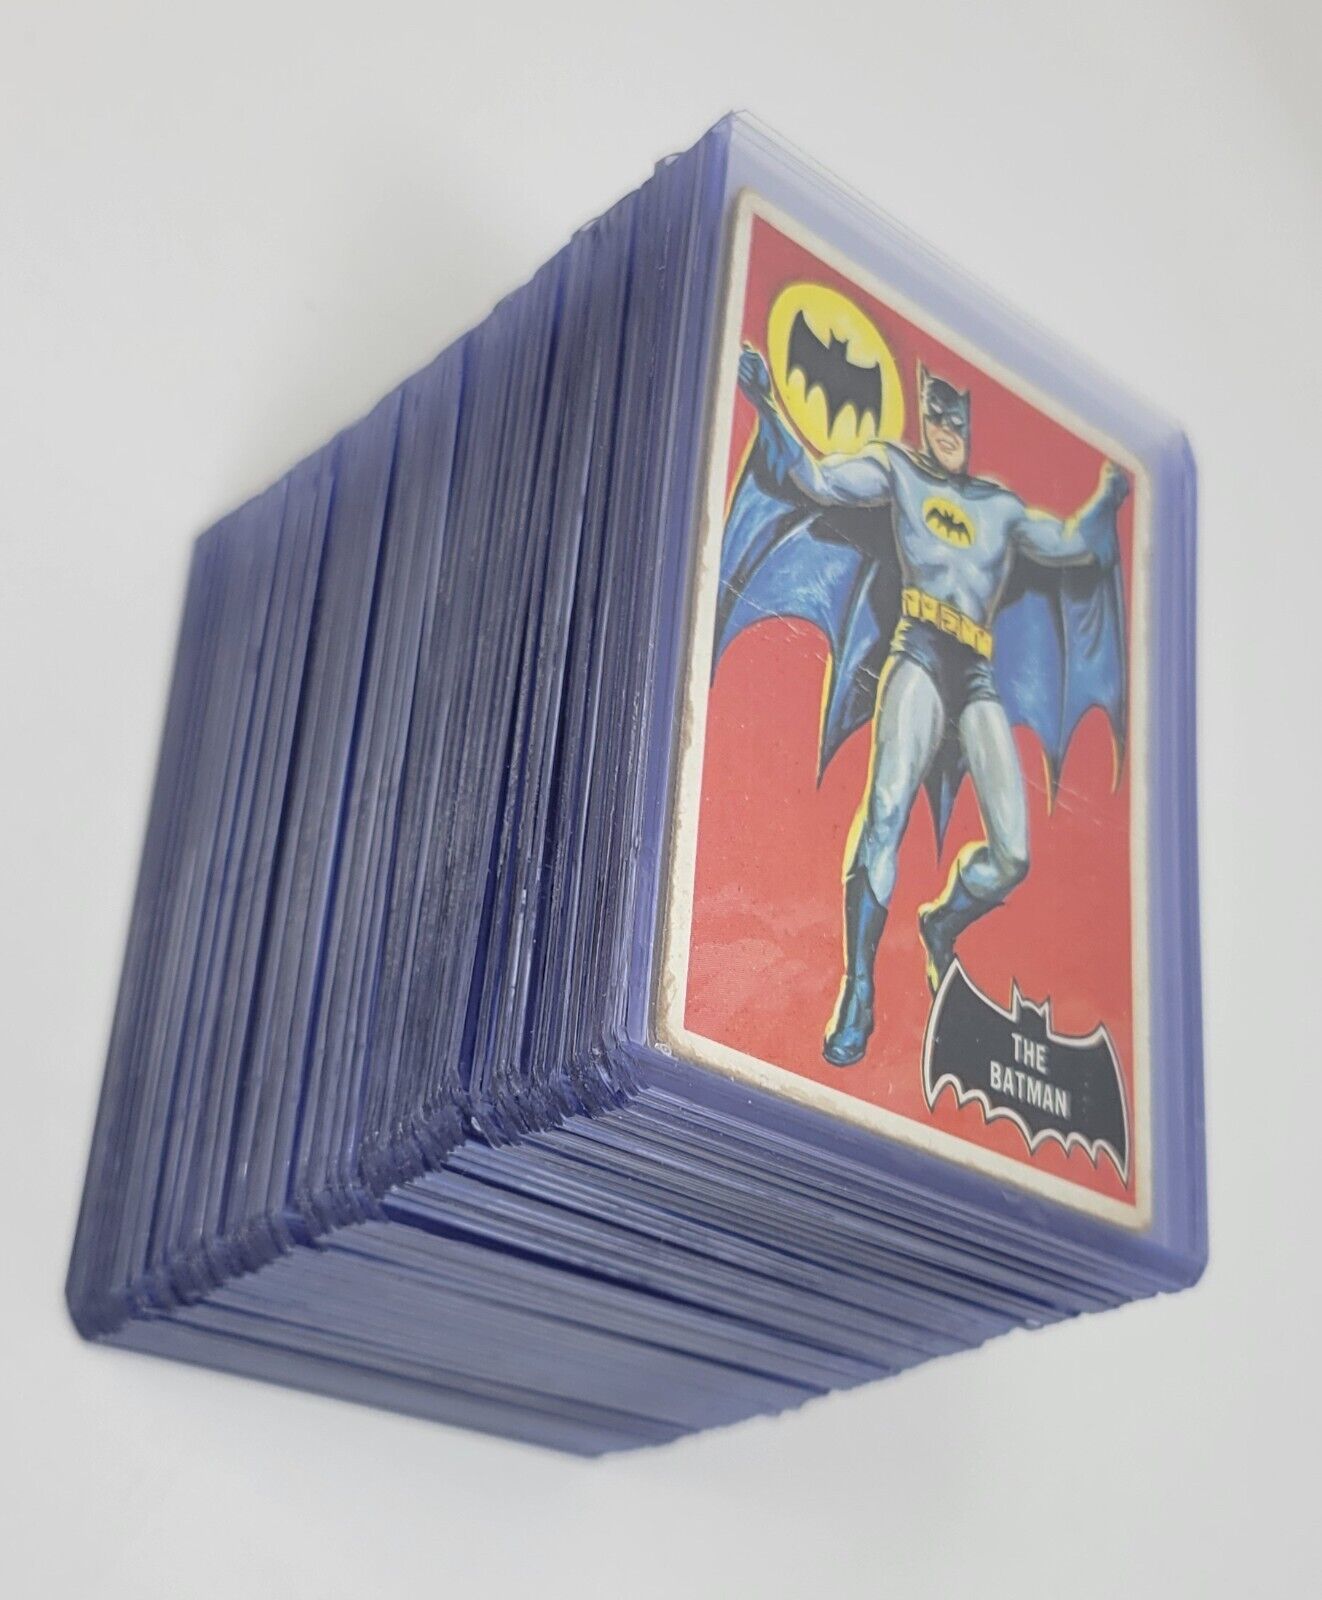 1966 Topps Batman - 1st Series/Black Bat/Orange back - Complete set of 55 cards